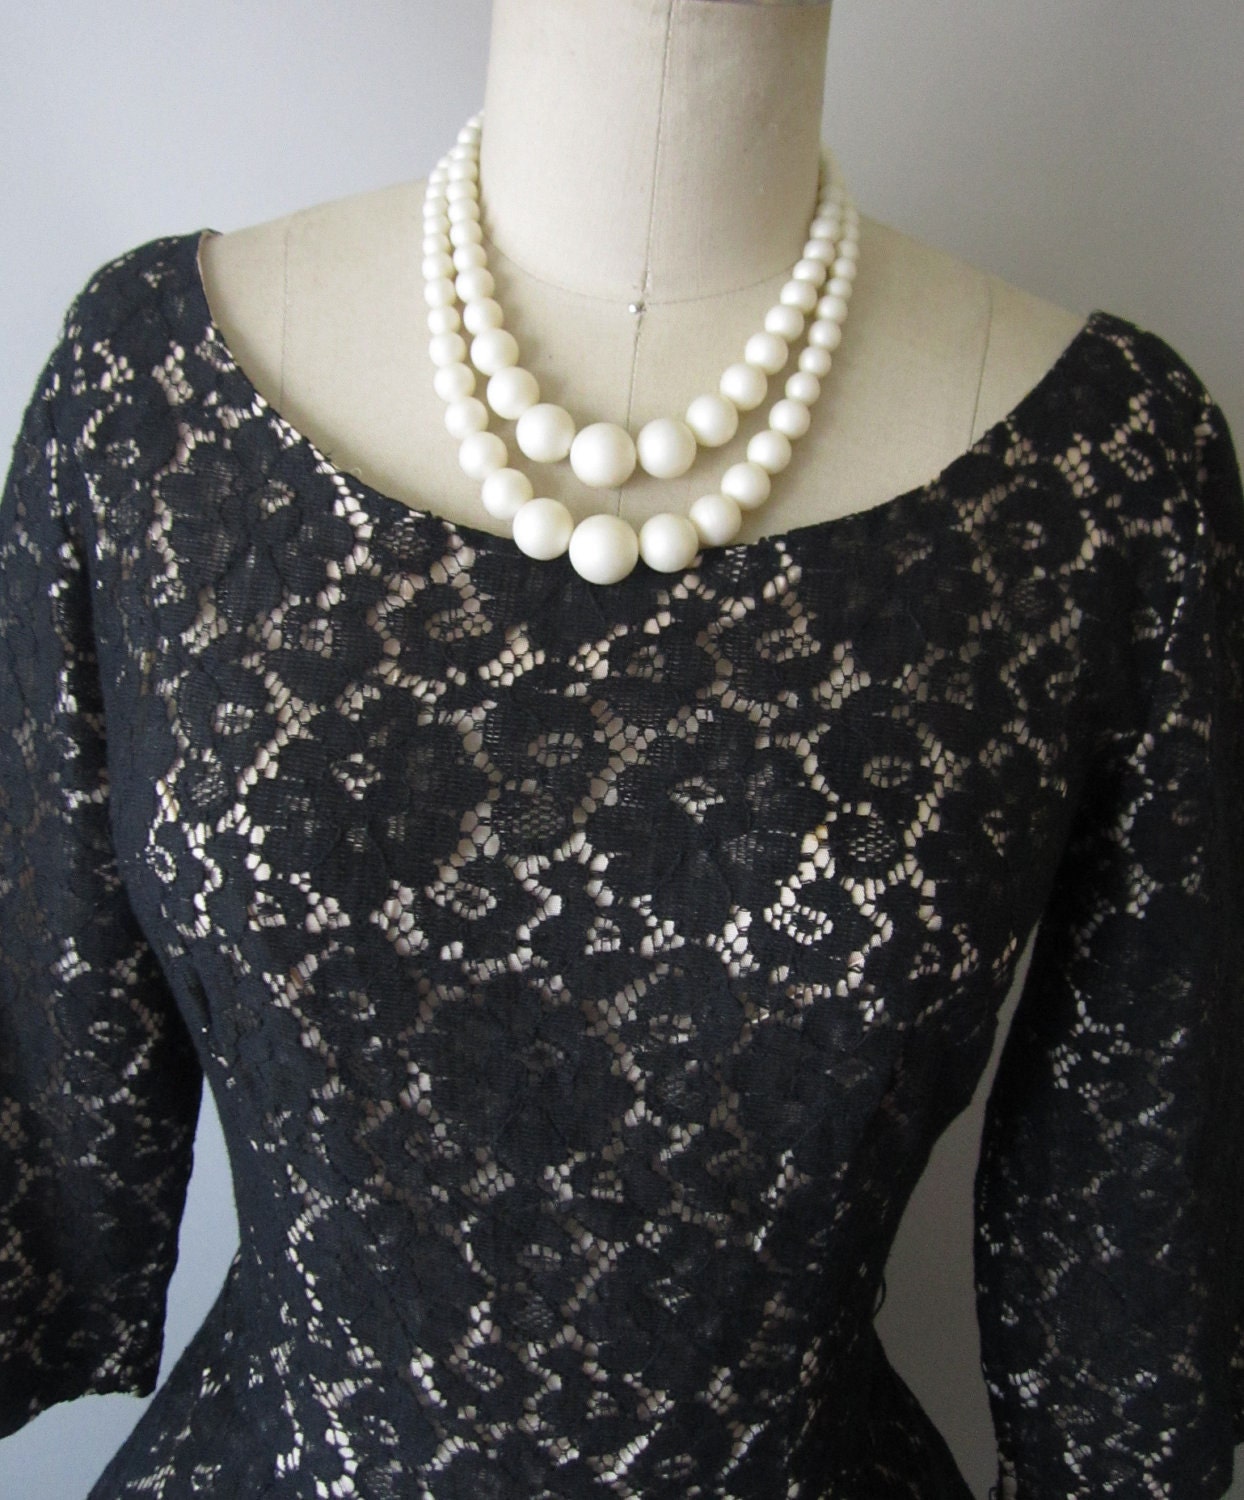 50's Lace Dress // Vintage 1950's Black Lace Illusion